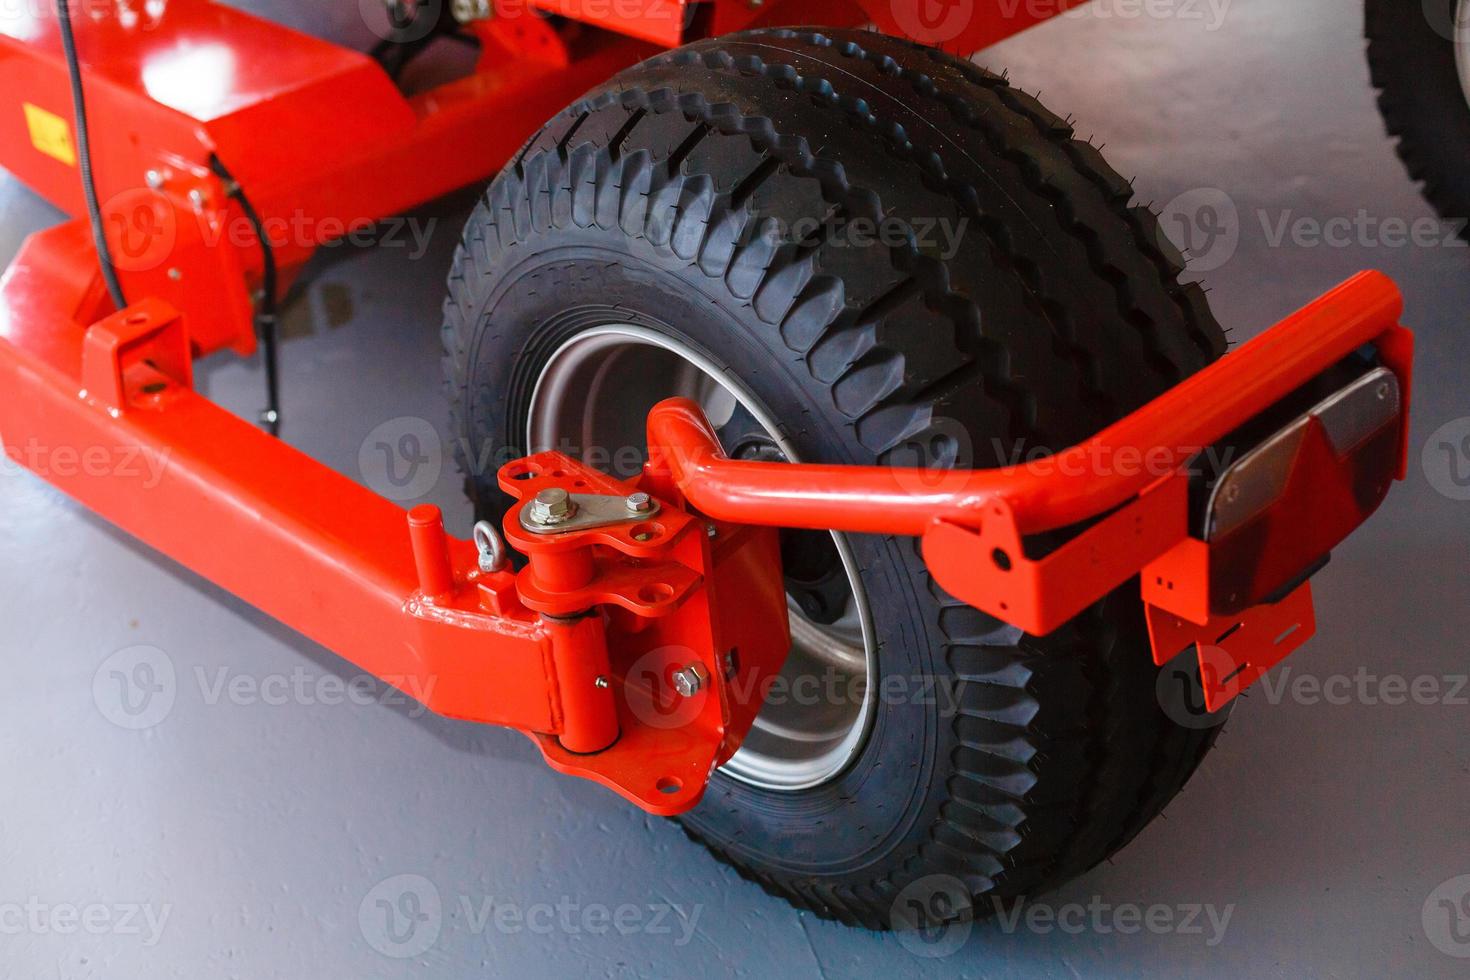 posteriore Visualizza di moderno agricolo trattore idraulico intoppo sollevamento telaio posteriore meccanismo per foto